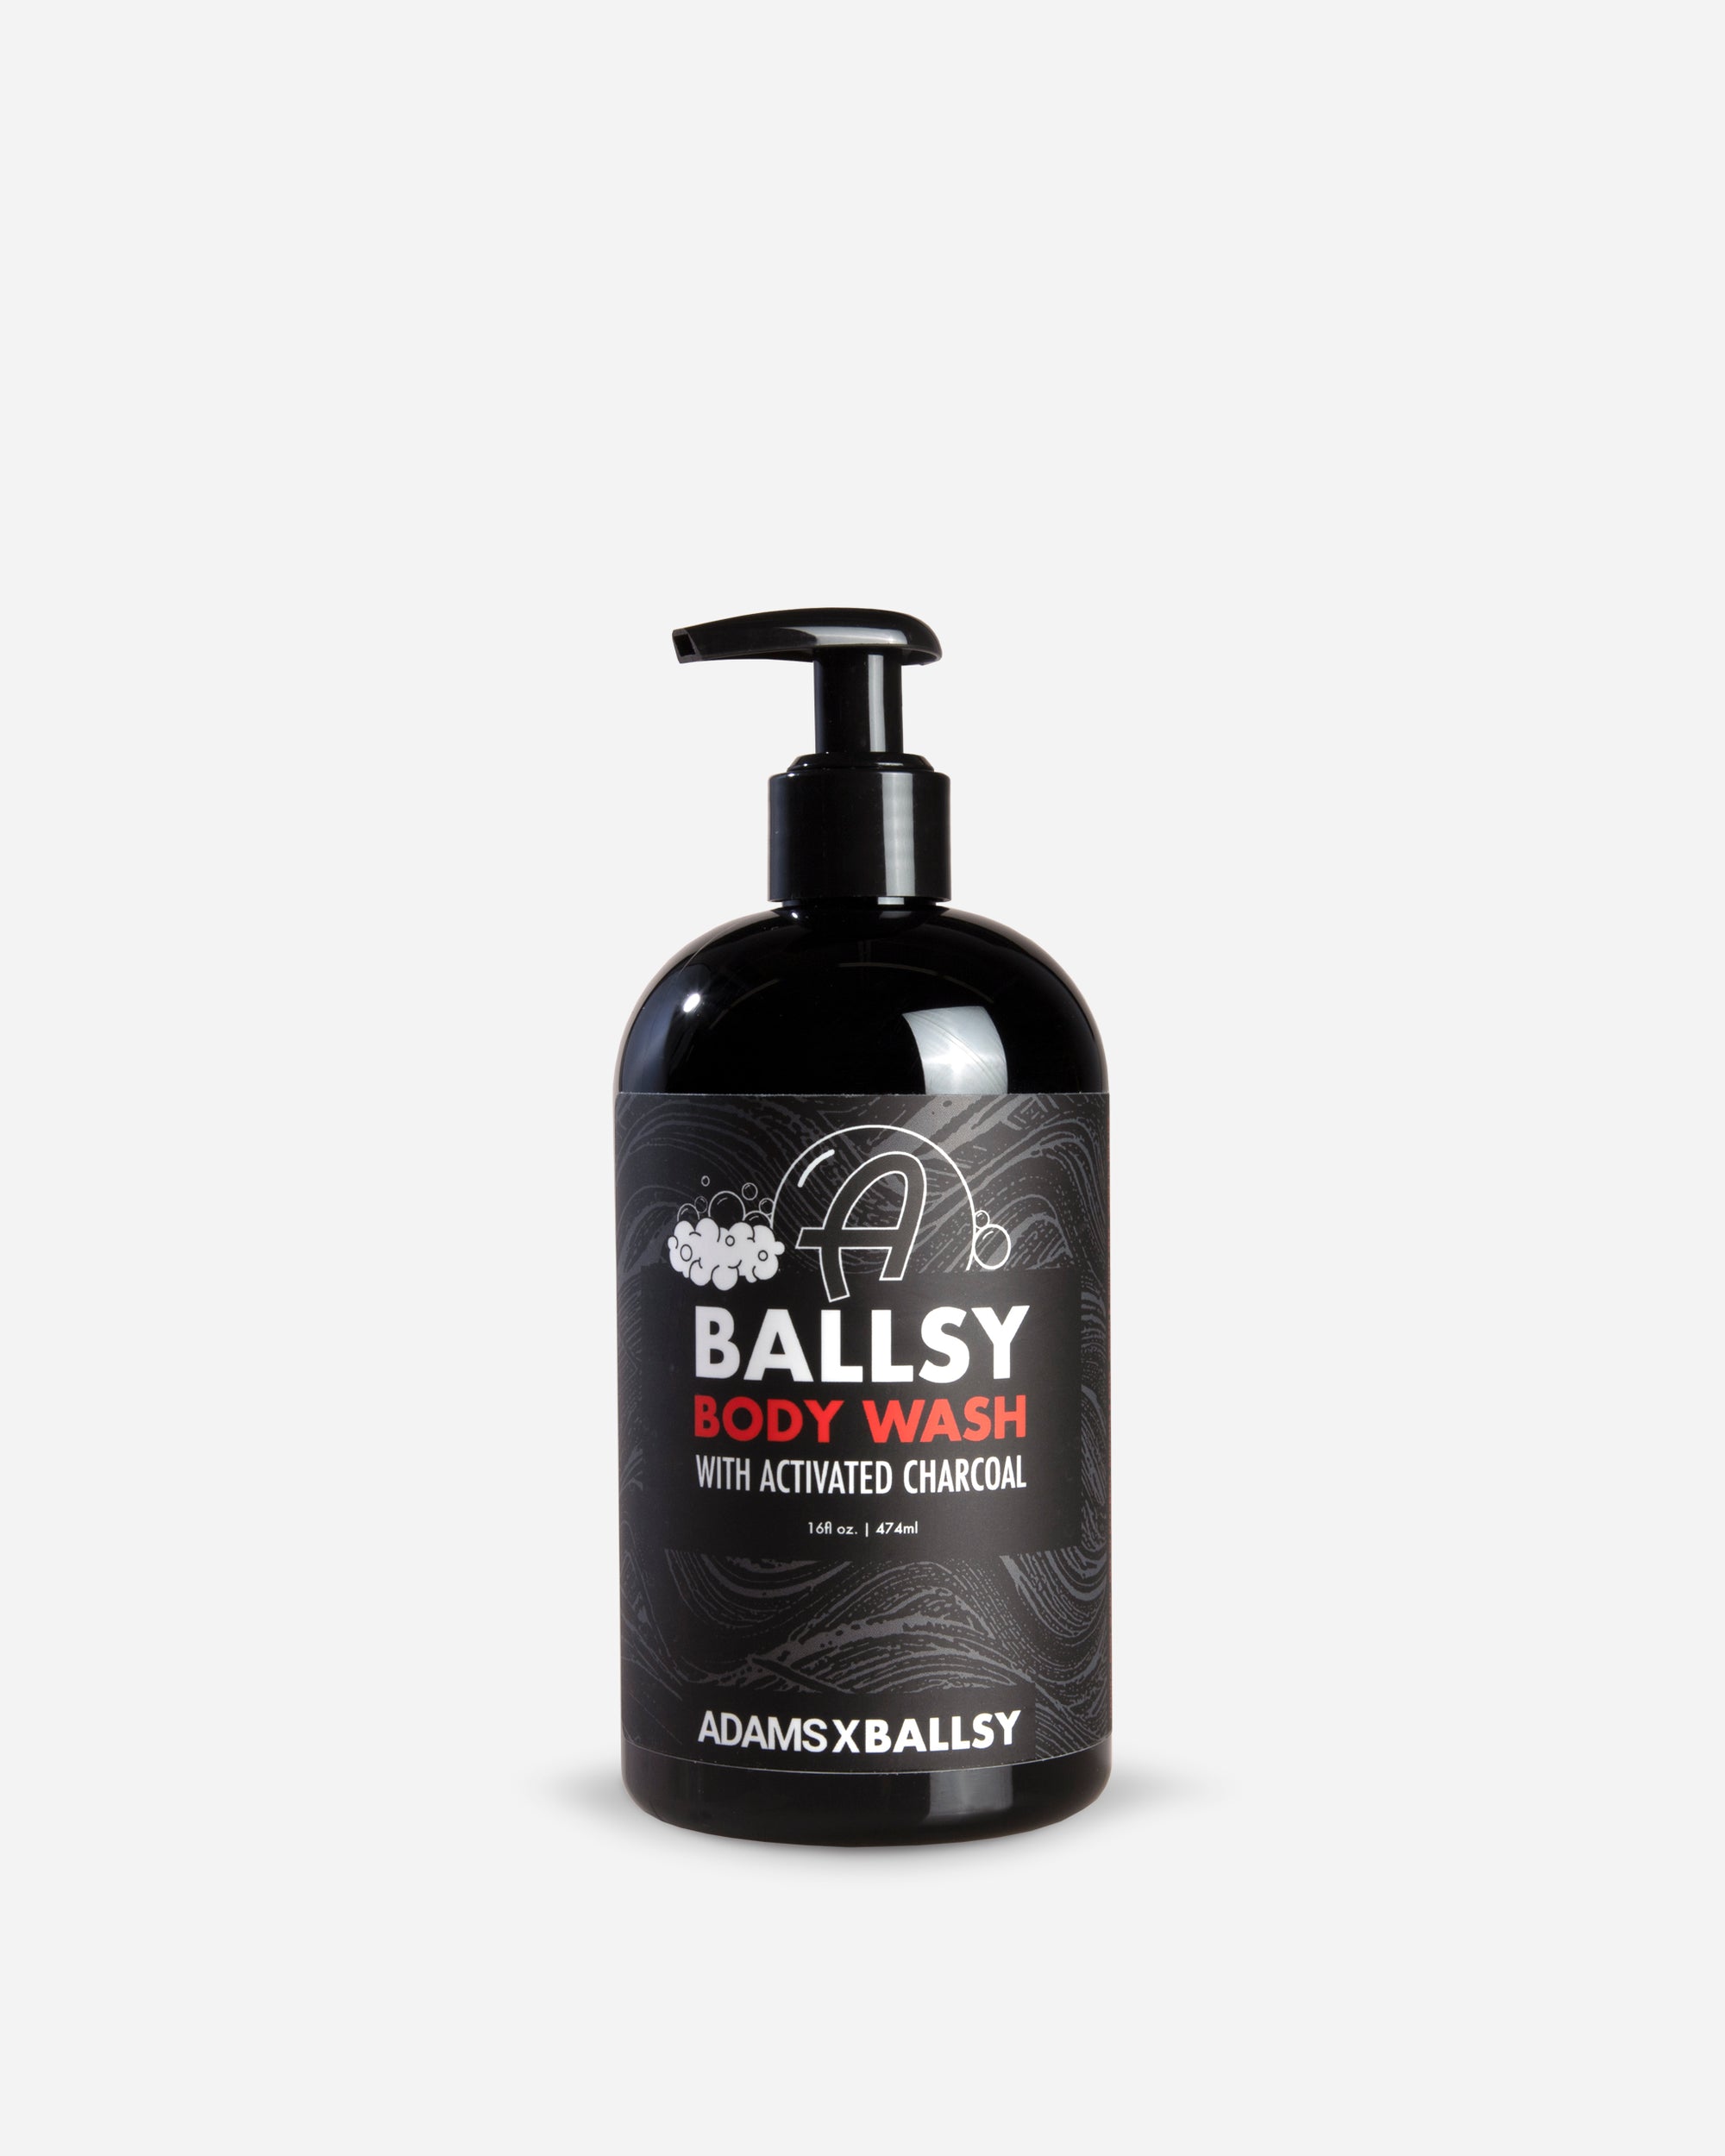 Adam's x Ballsy Body Wash 16oz (Limited)